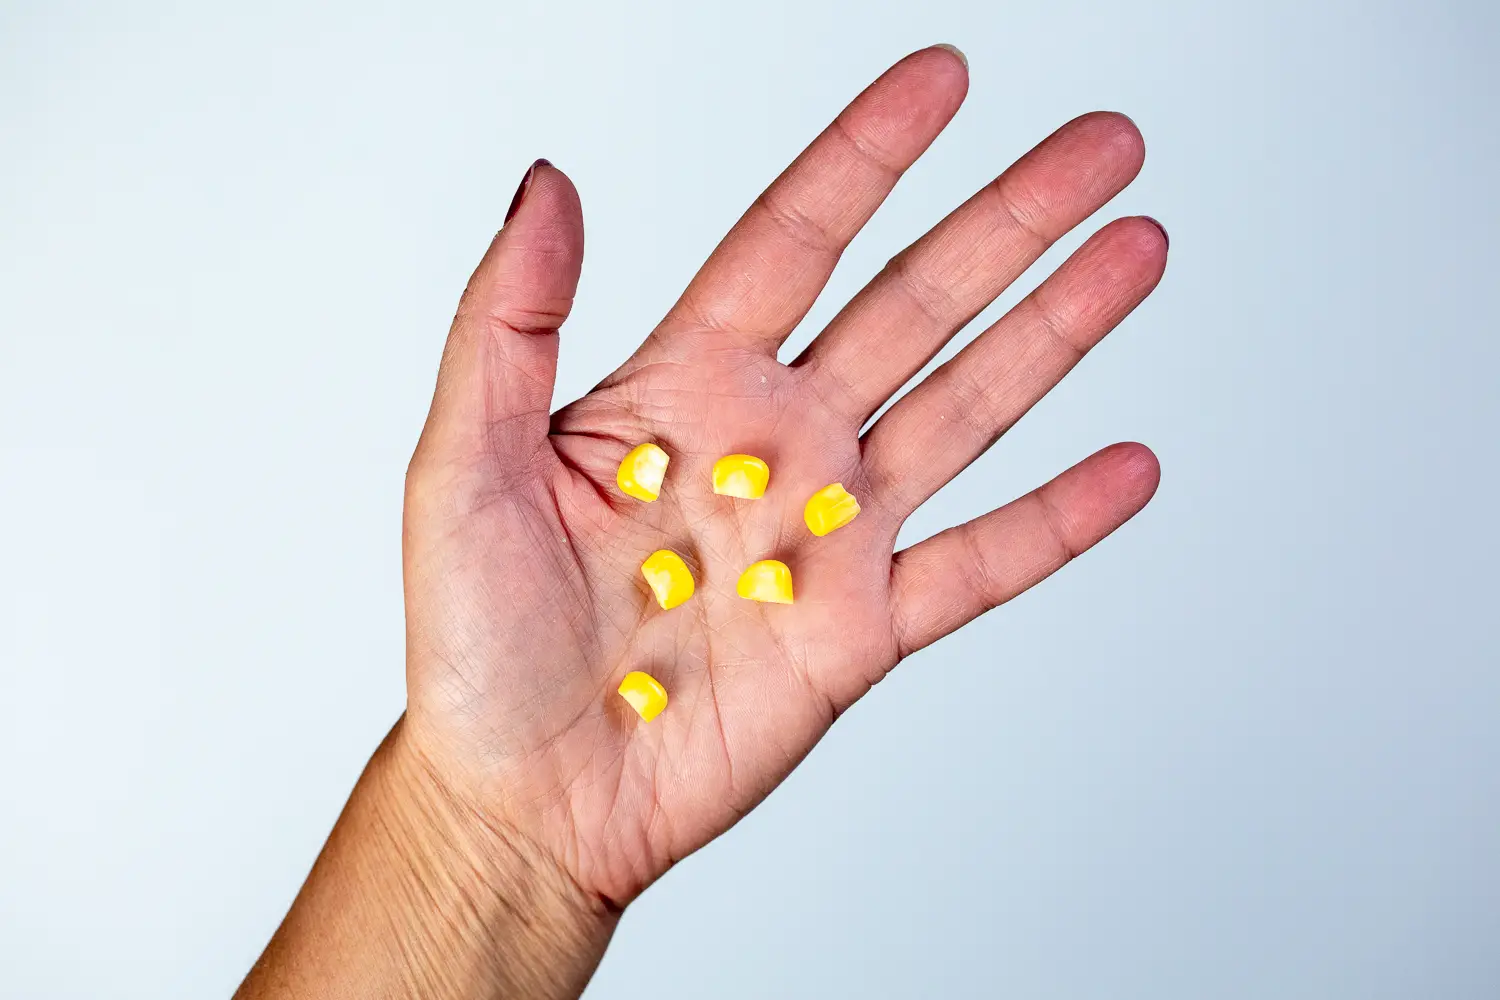 a hand holding six loose corn kernels